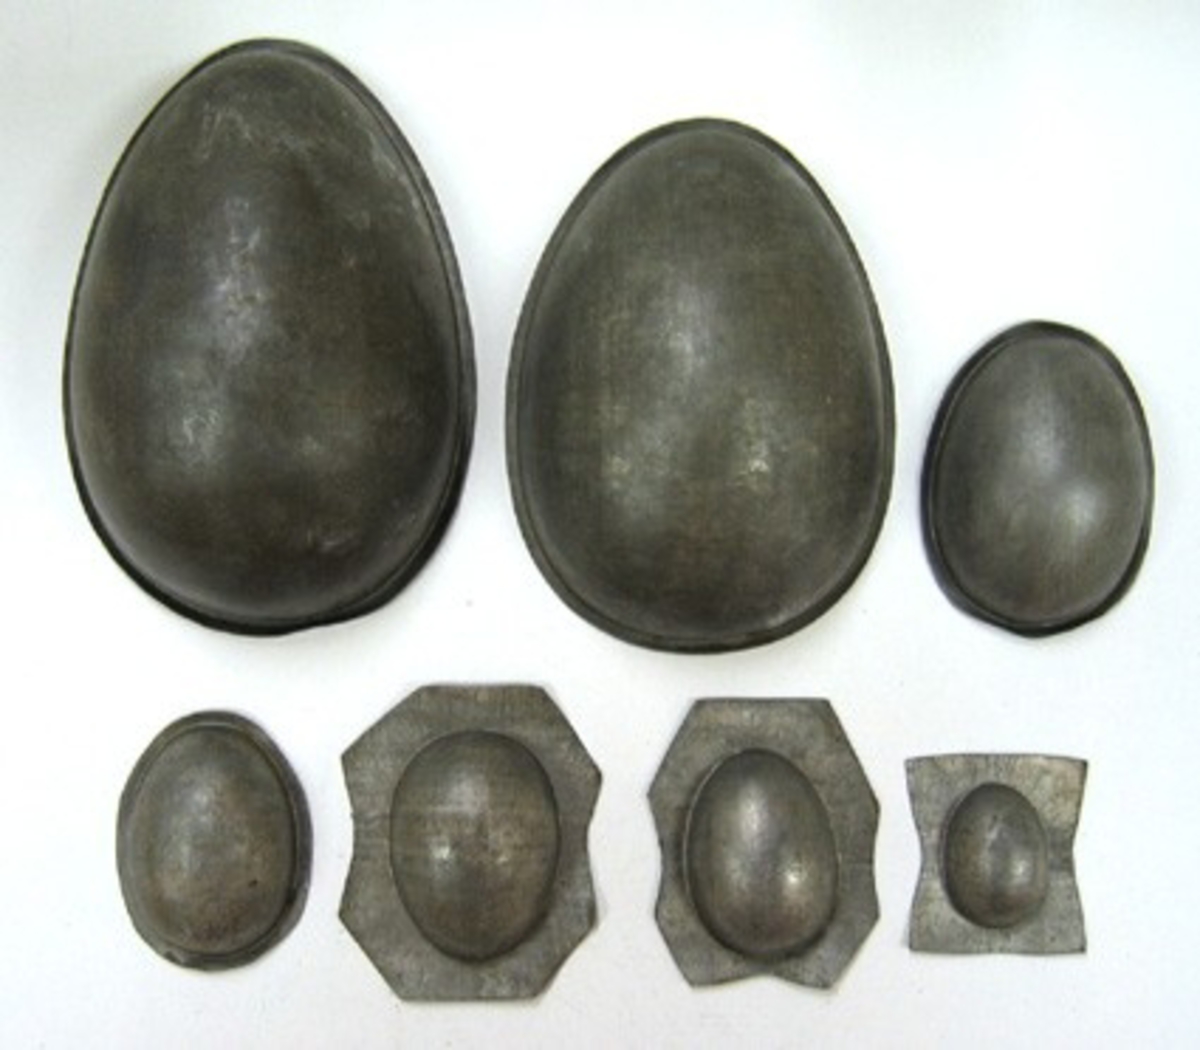 7 enkla formar i äggform. Måtten som är angivna gäller höjden på äggformen.

Formar för tillverkning av chokladägg (halvor).

Rörelsen lades ned 1982.